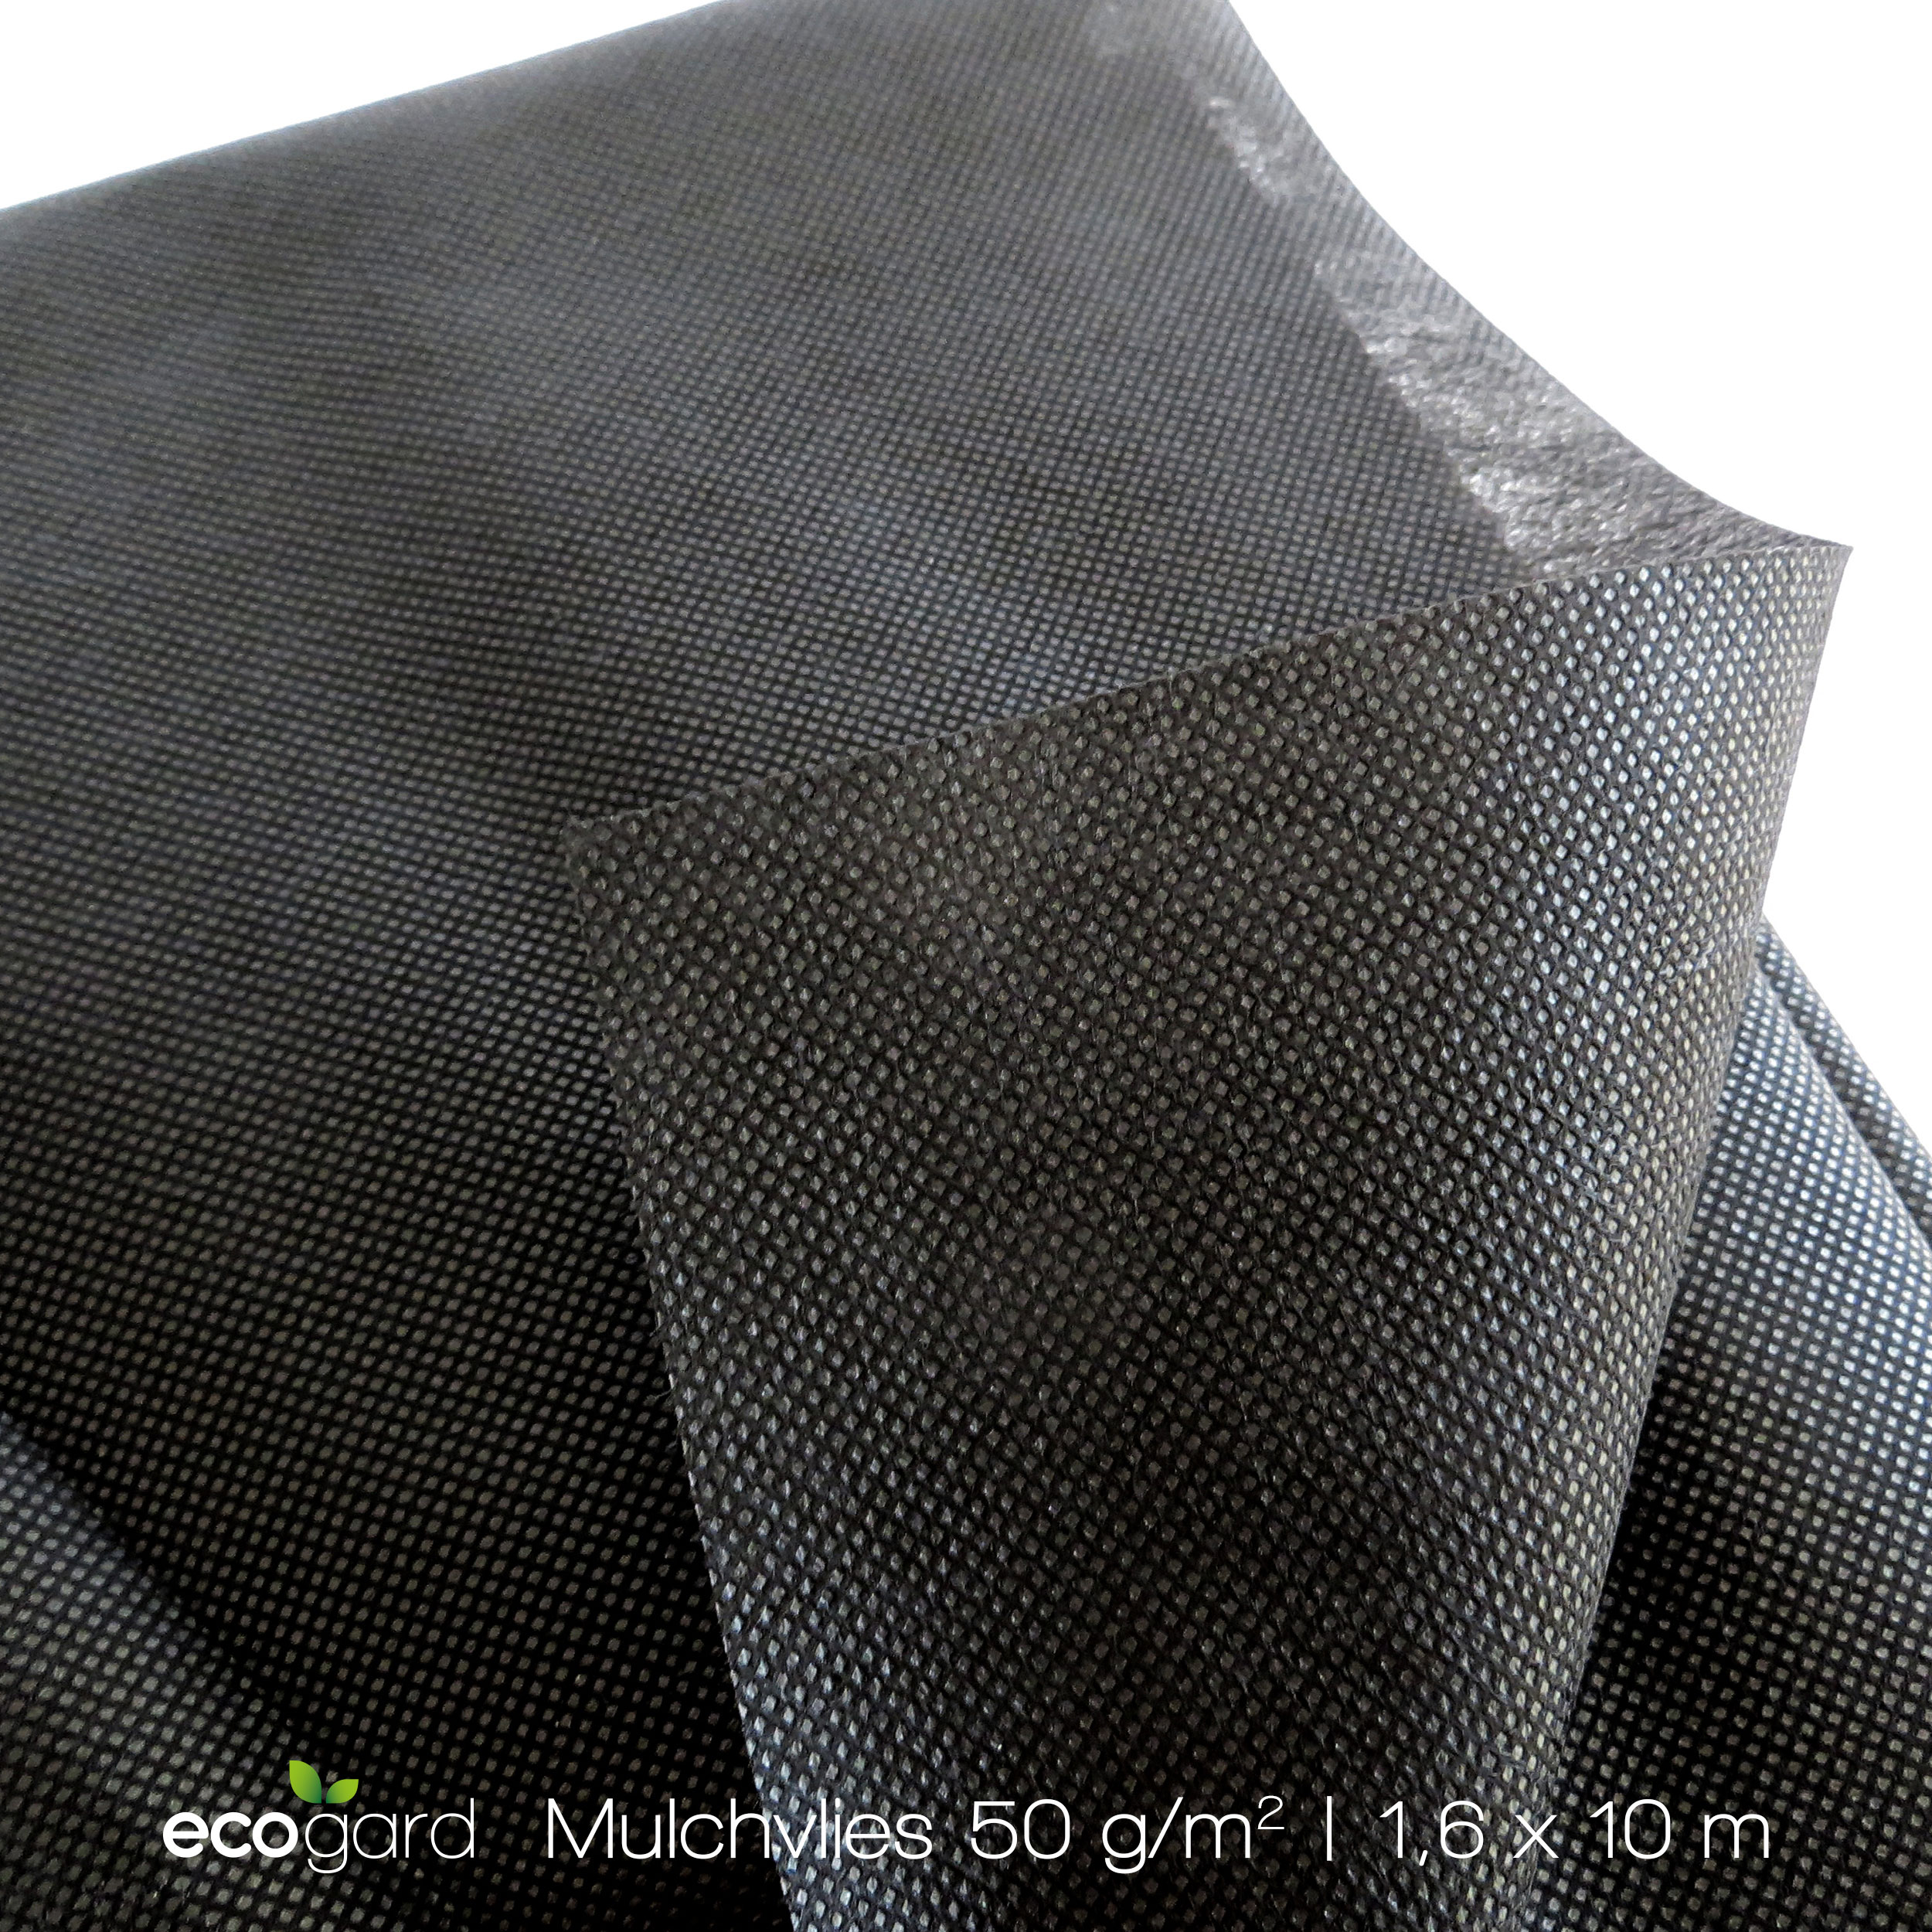 ecogard-50g-mulchvlies-detail 2